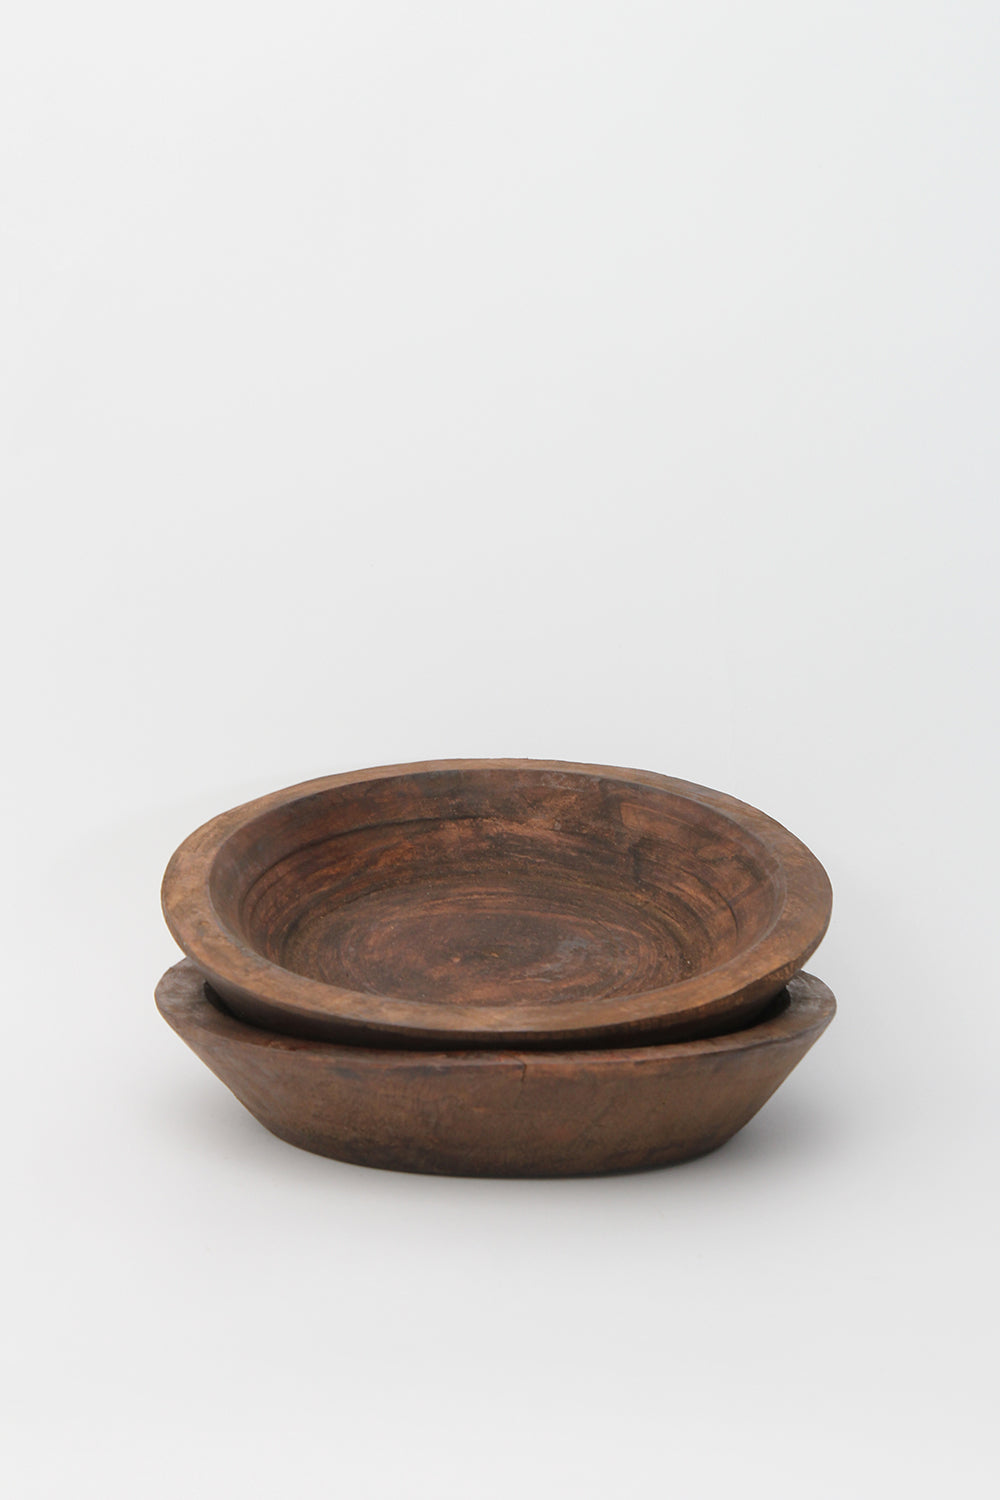 Unique Wooden Bowl